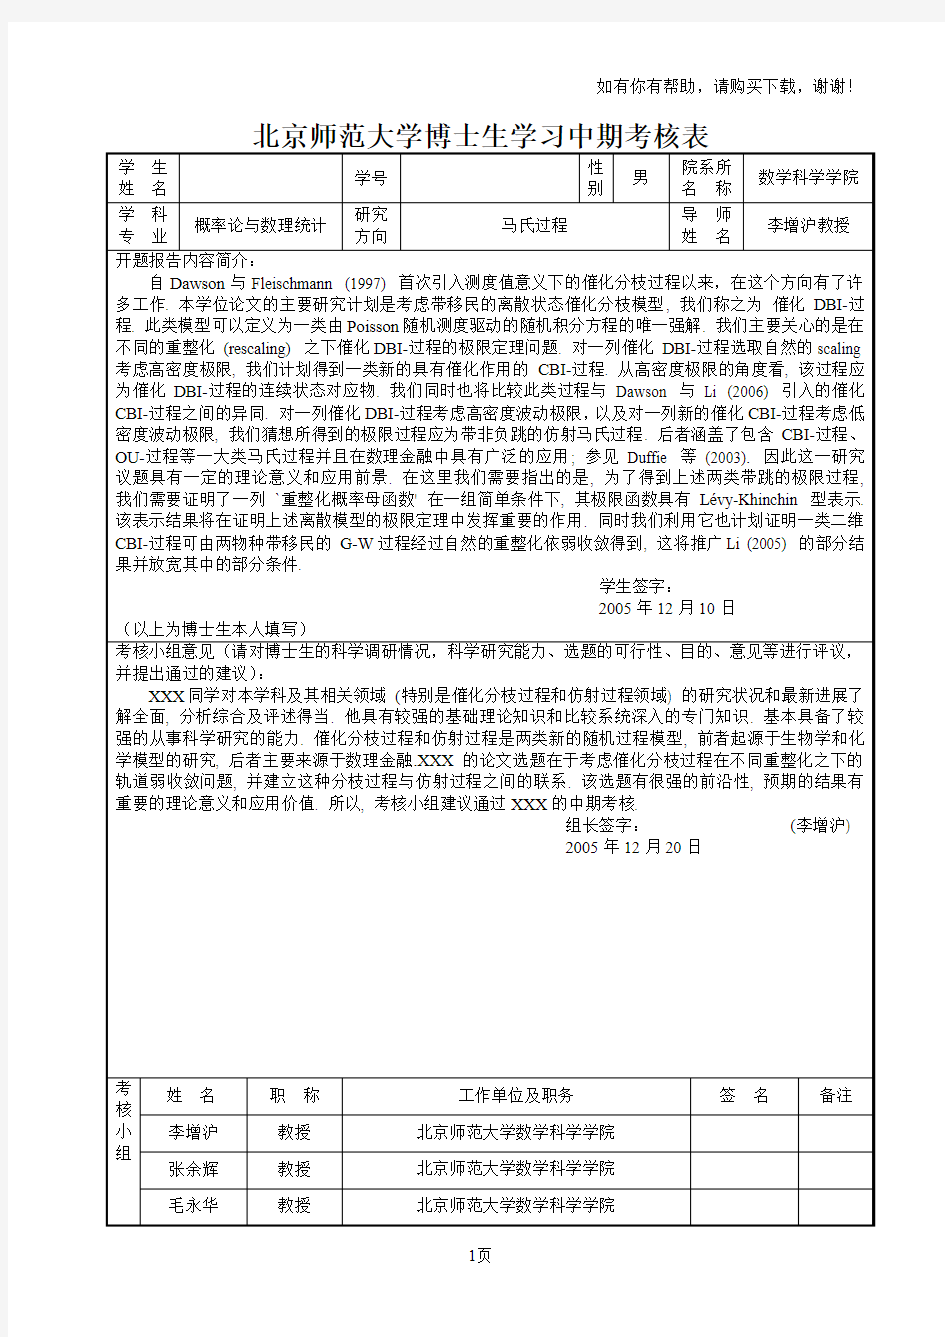 北京师范大学博士生学习中期考核表